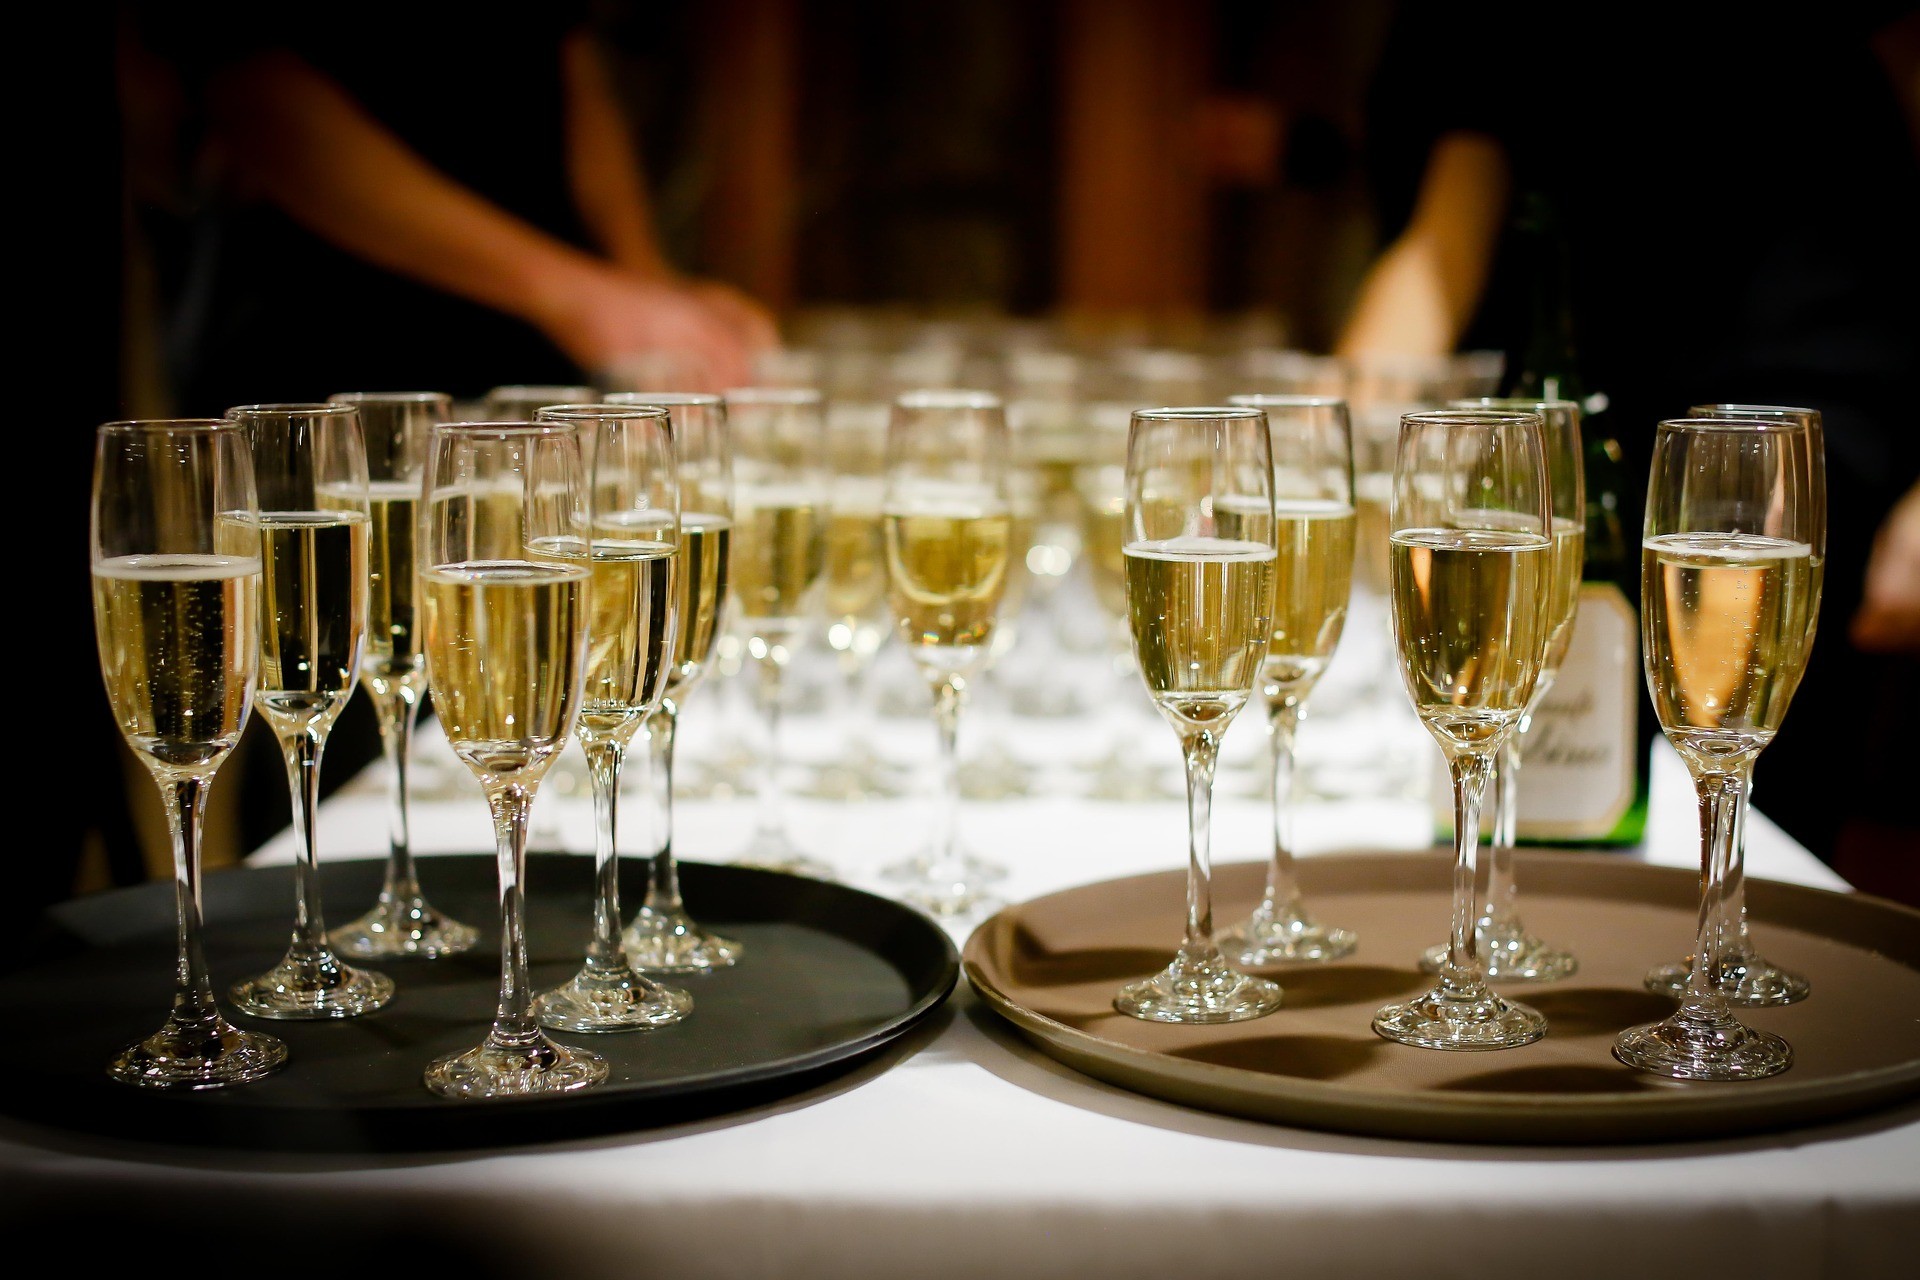 Шампанское в чистом виде менее опасно, чем все варианты коктейлей на его основе. Фото © pixabay.com